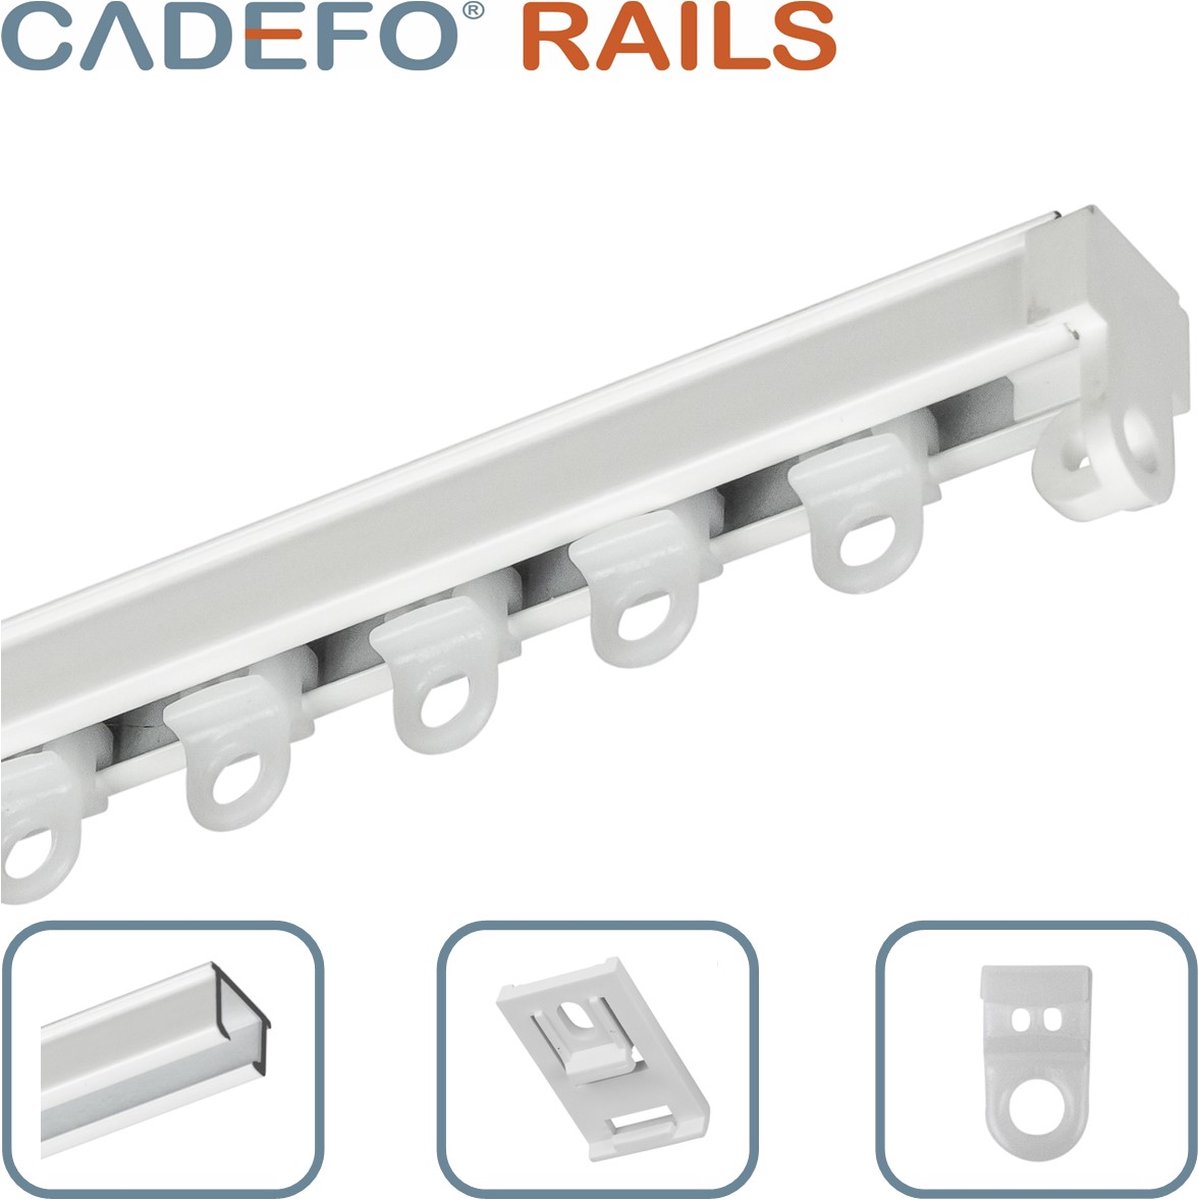 CADEFO RAILS (301 - 350 cm) Gordijnrails - Compleet op maat! - UIT 1 STUK - Leverbaar tot 6 meter - Plafondbevestiging - Lengte 338 cm